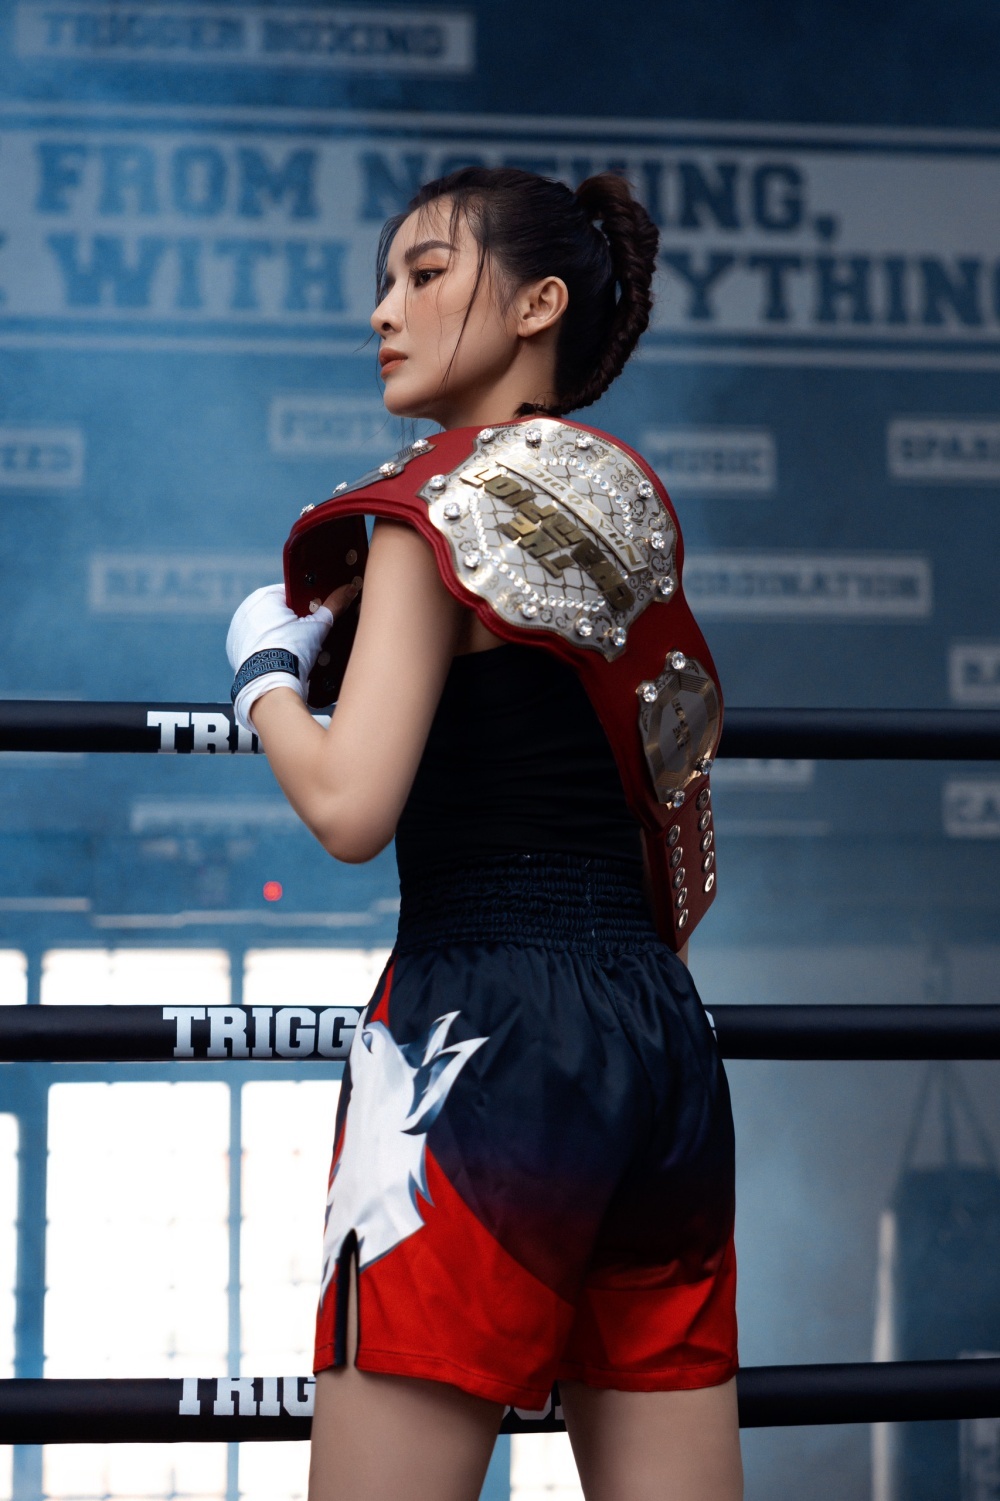  
Cô dành hết sức lực với trận đấu boxing.